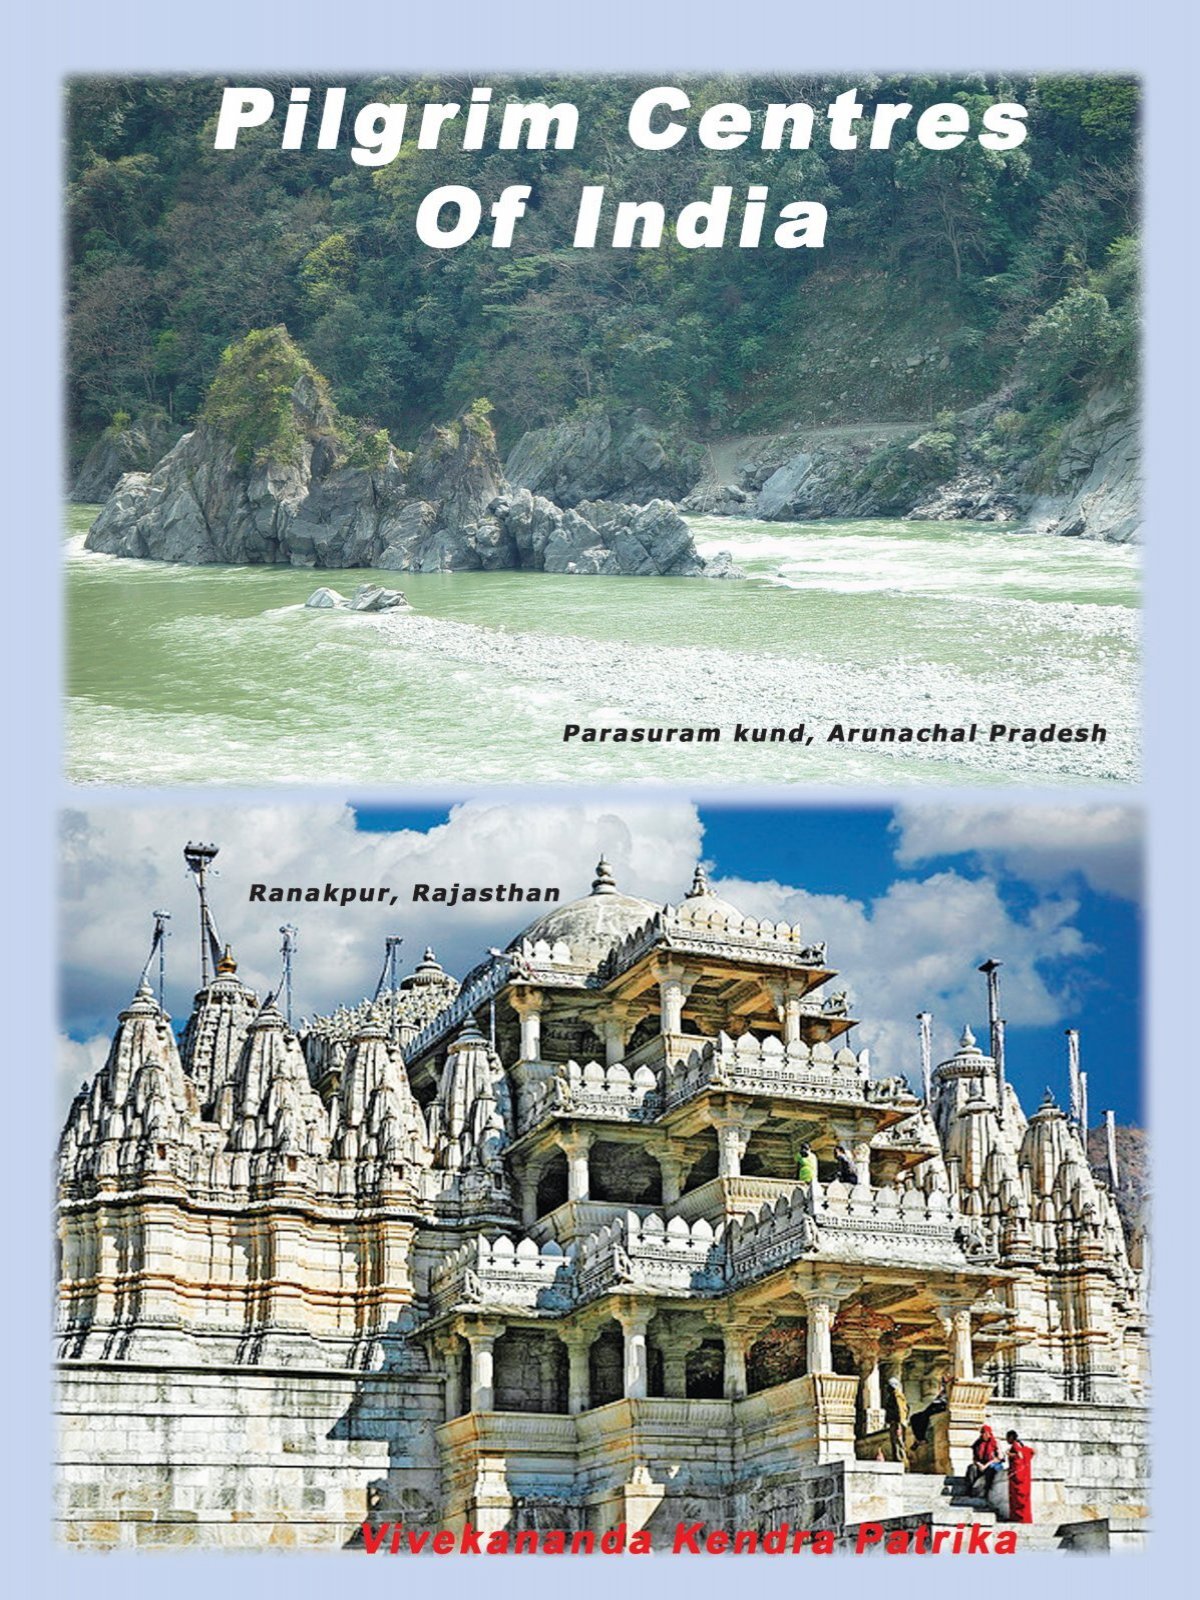 pilgrim centres of india image